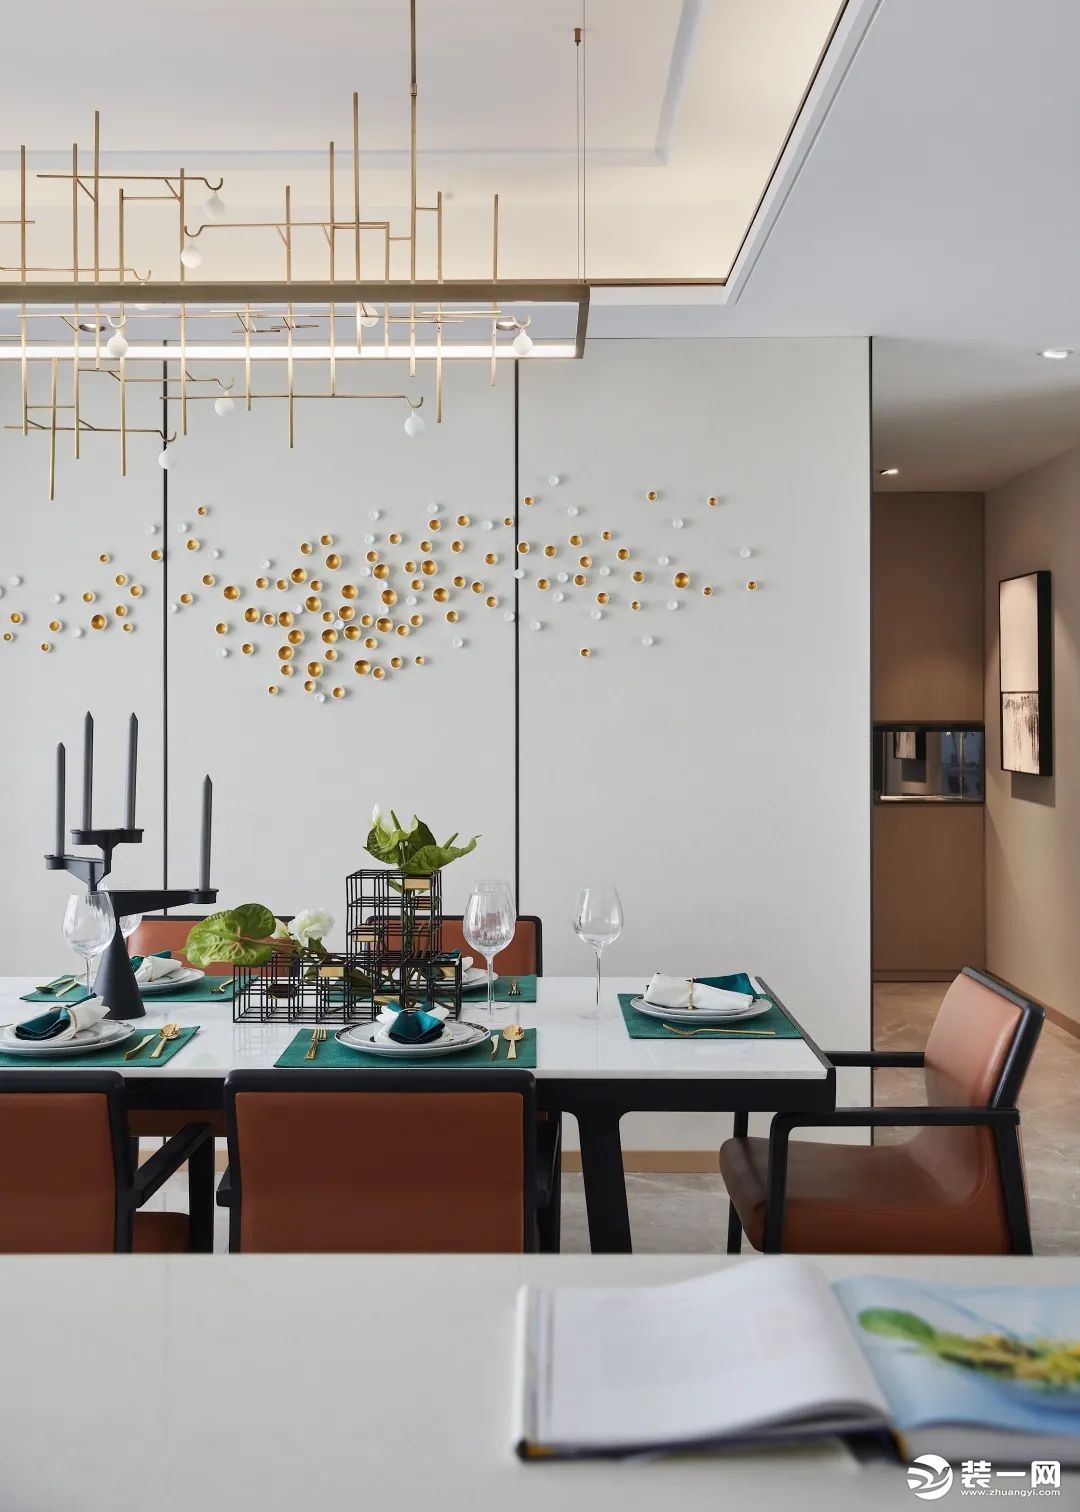 餐厅与客厅、厨房呈开放之姿贯连，将空间尺度拉升到极致，欢快的撞色更易调动味蕾。